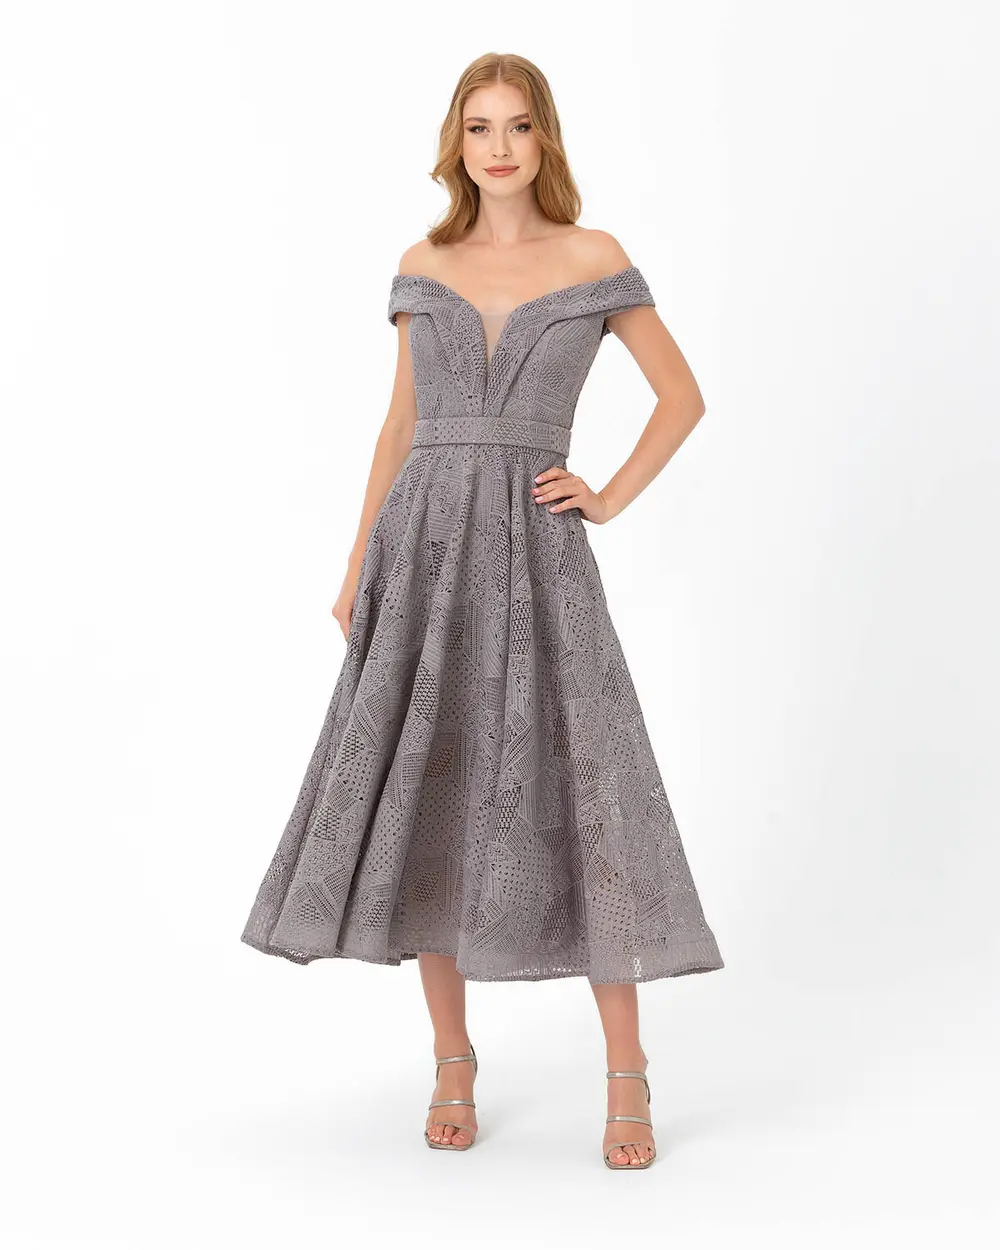  A Cut Open Shoulder Lace Evening Dress